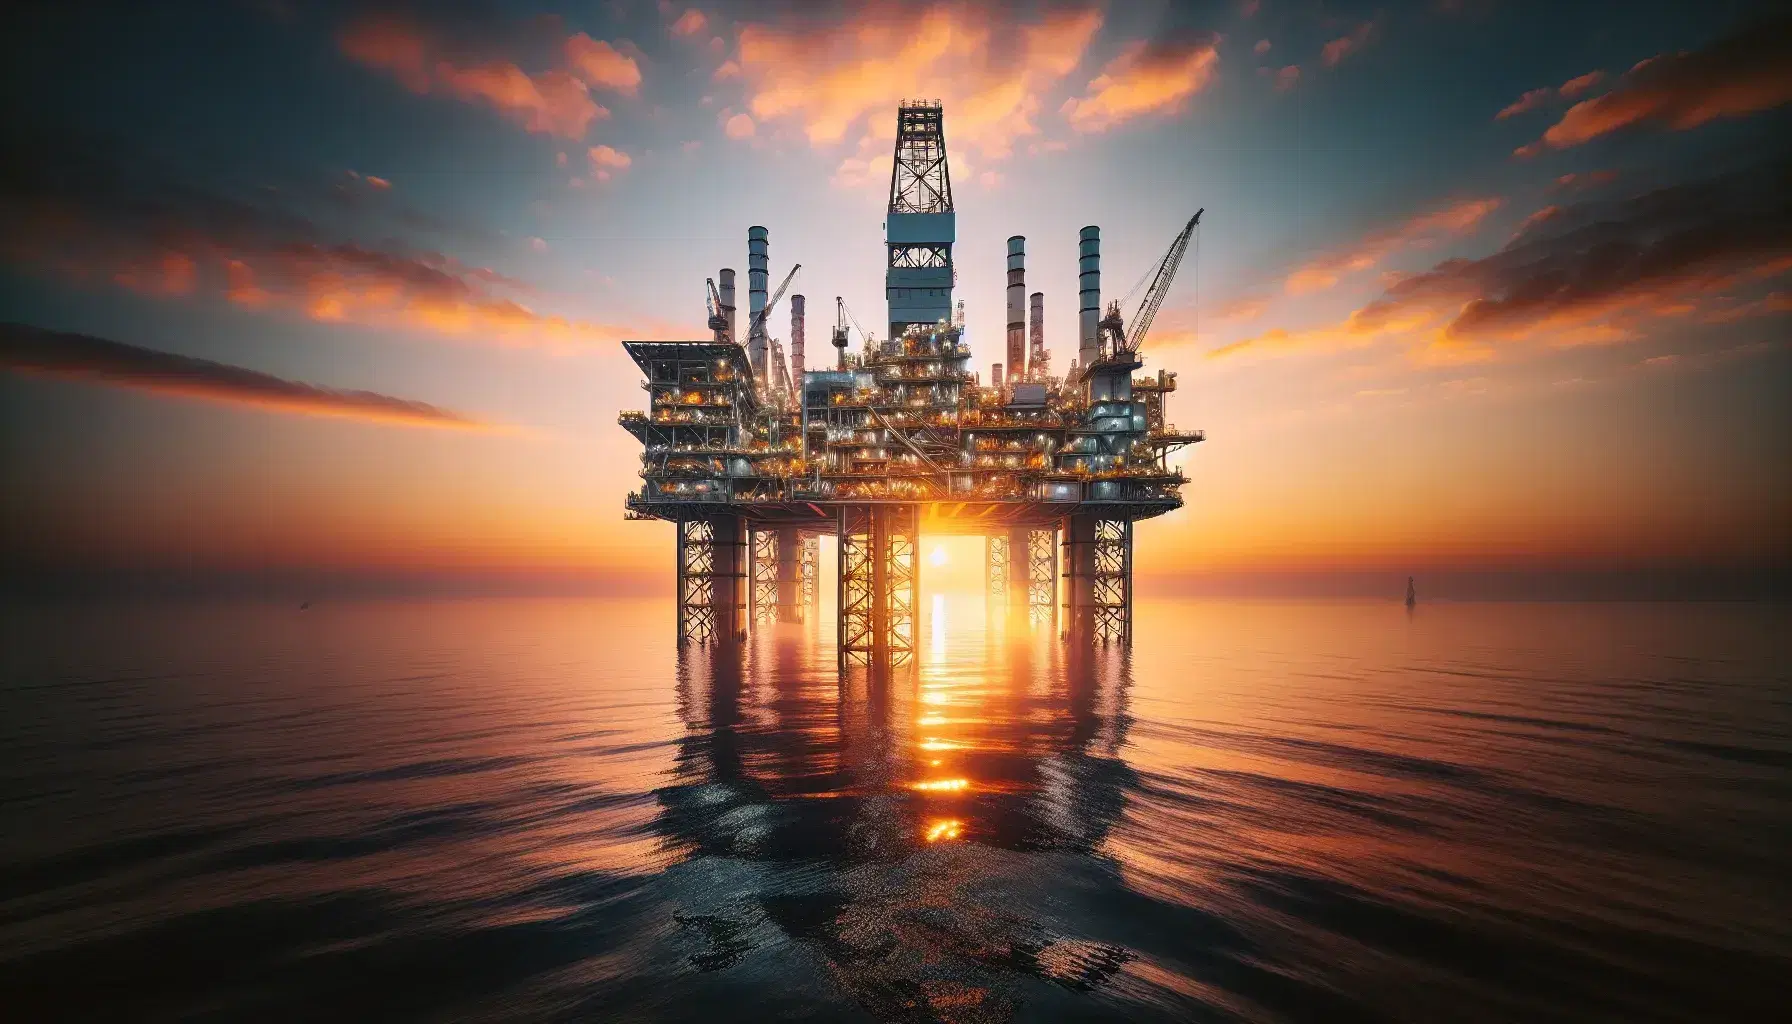 Plataforma petrolífera en alta mar durante un atardecer con cielo anaranjado y reflejos dorados sobre las tranquilas aguas oceánicas.